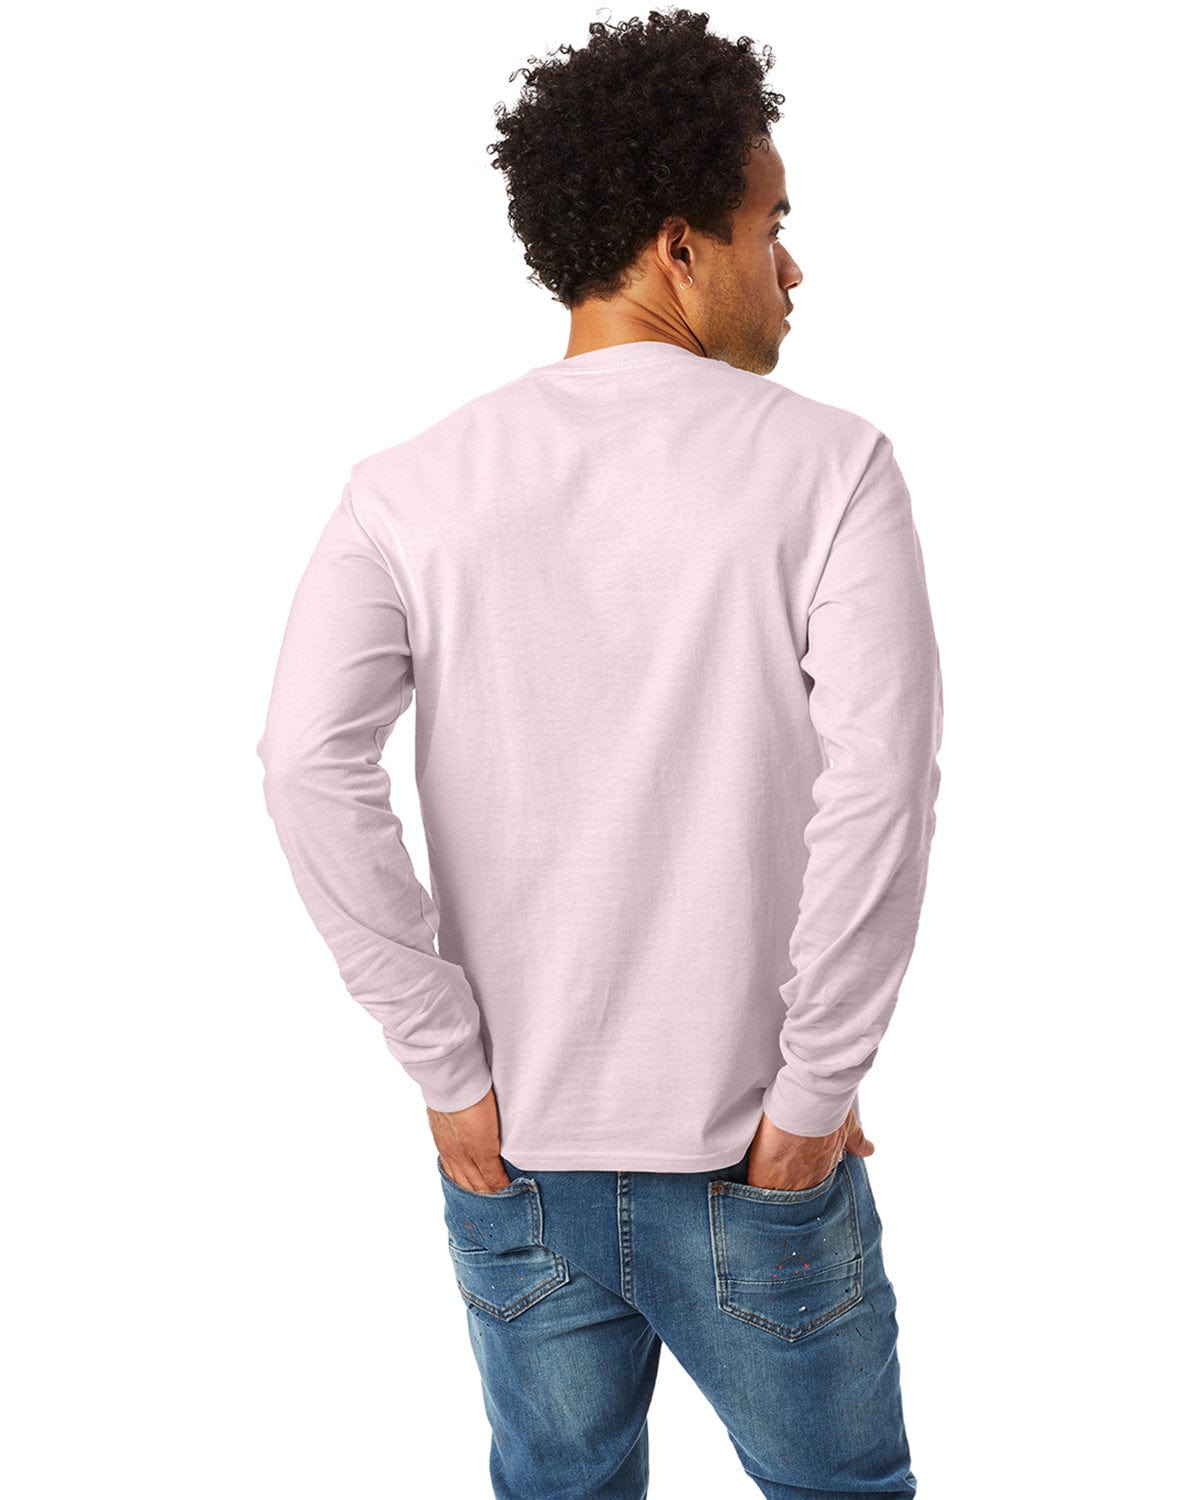 Hanes ComfortSoft Cotton Long Sleeve T-Shirt – CheapesTees